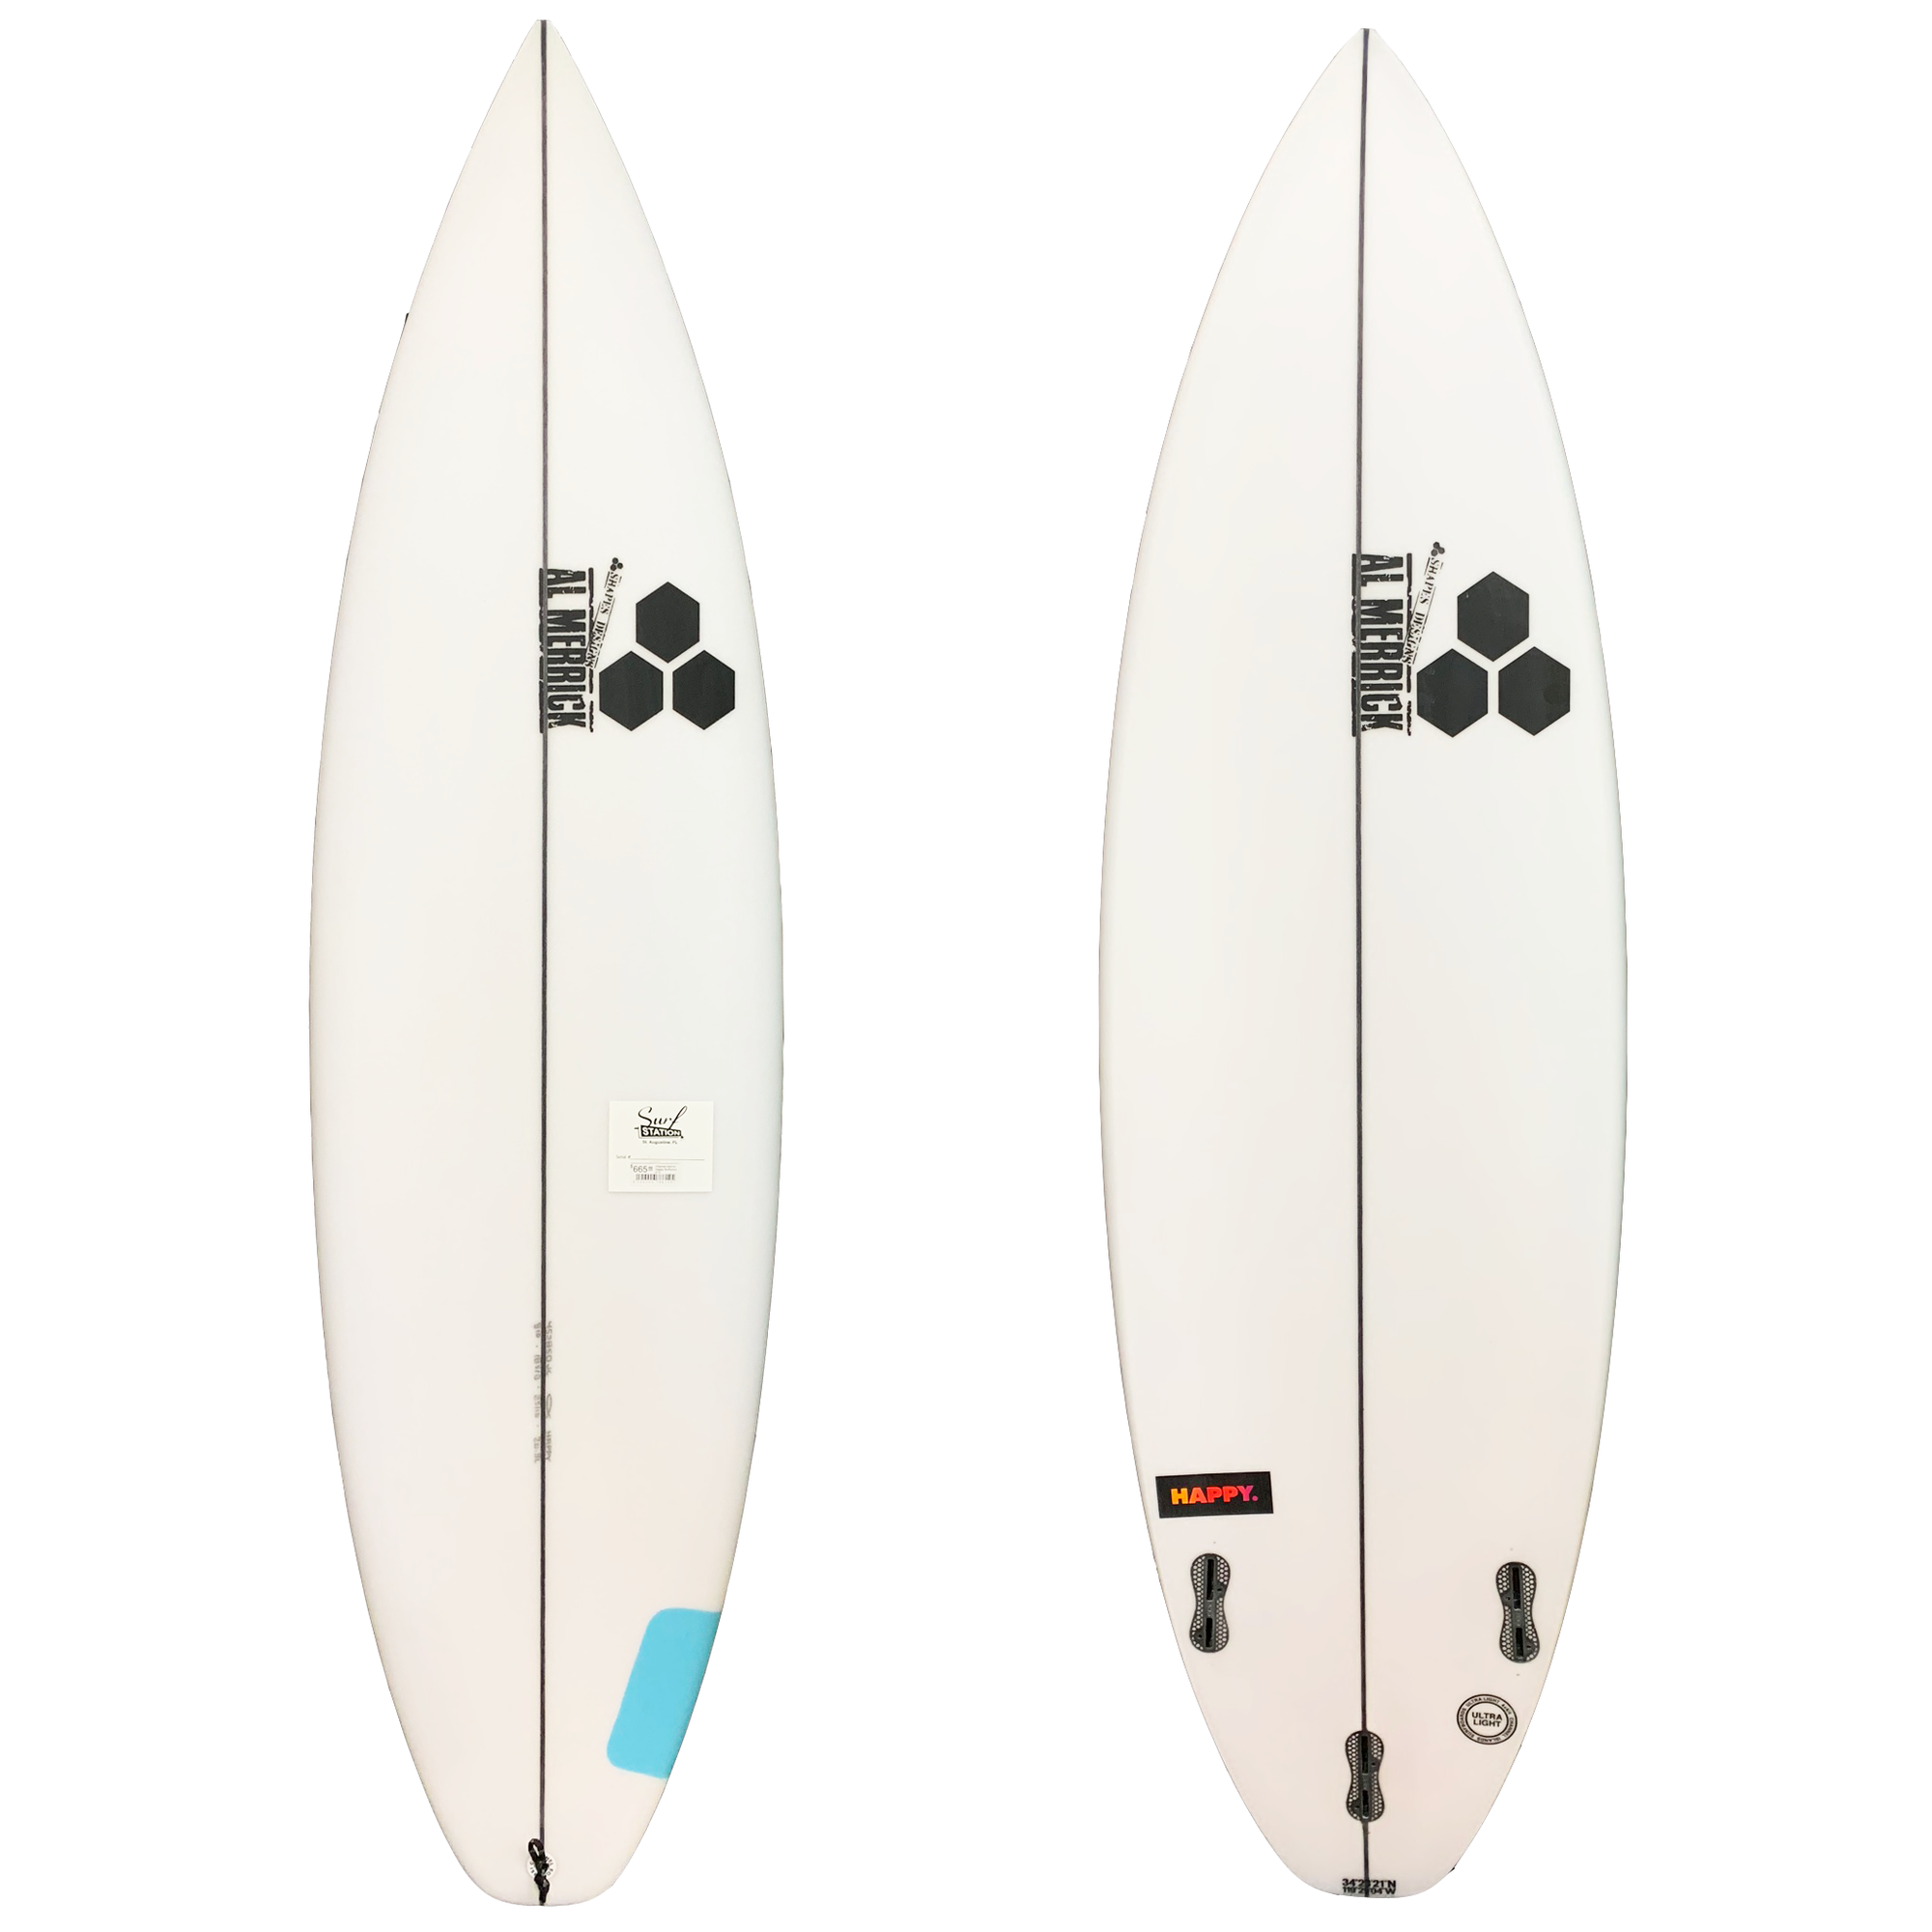 Channel Islands Happy Plus Surfboard - FCS II